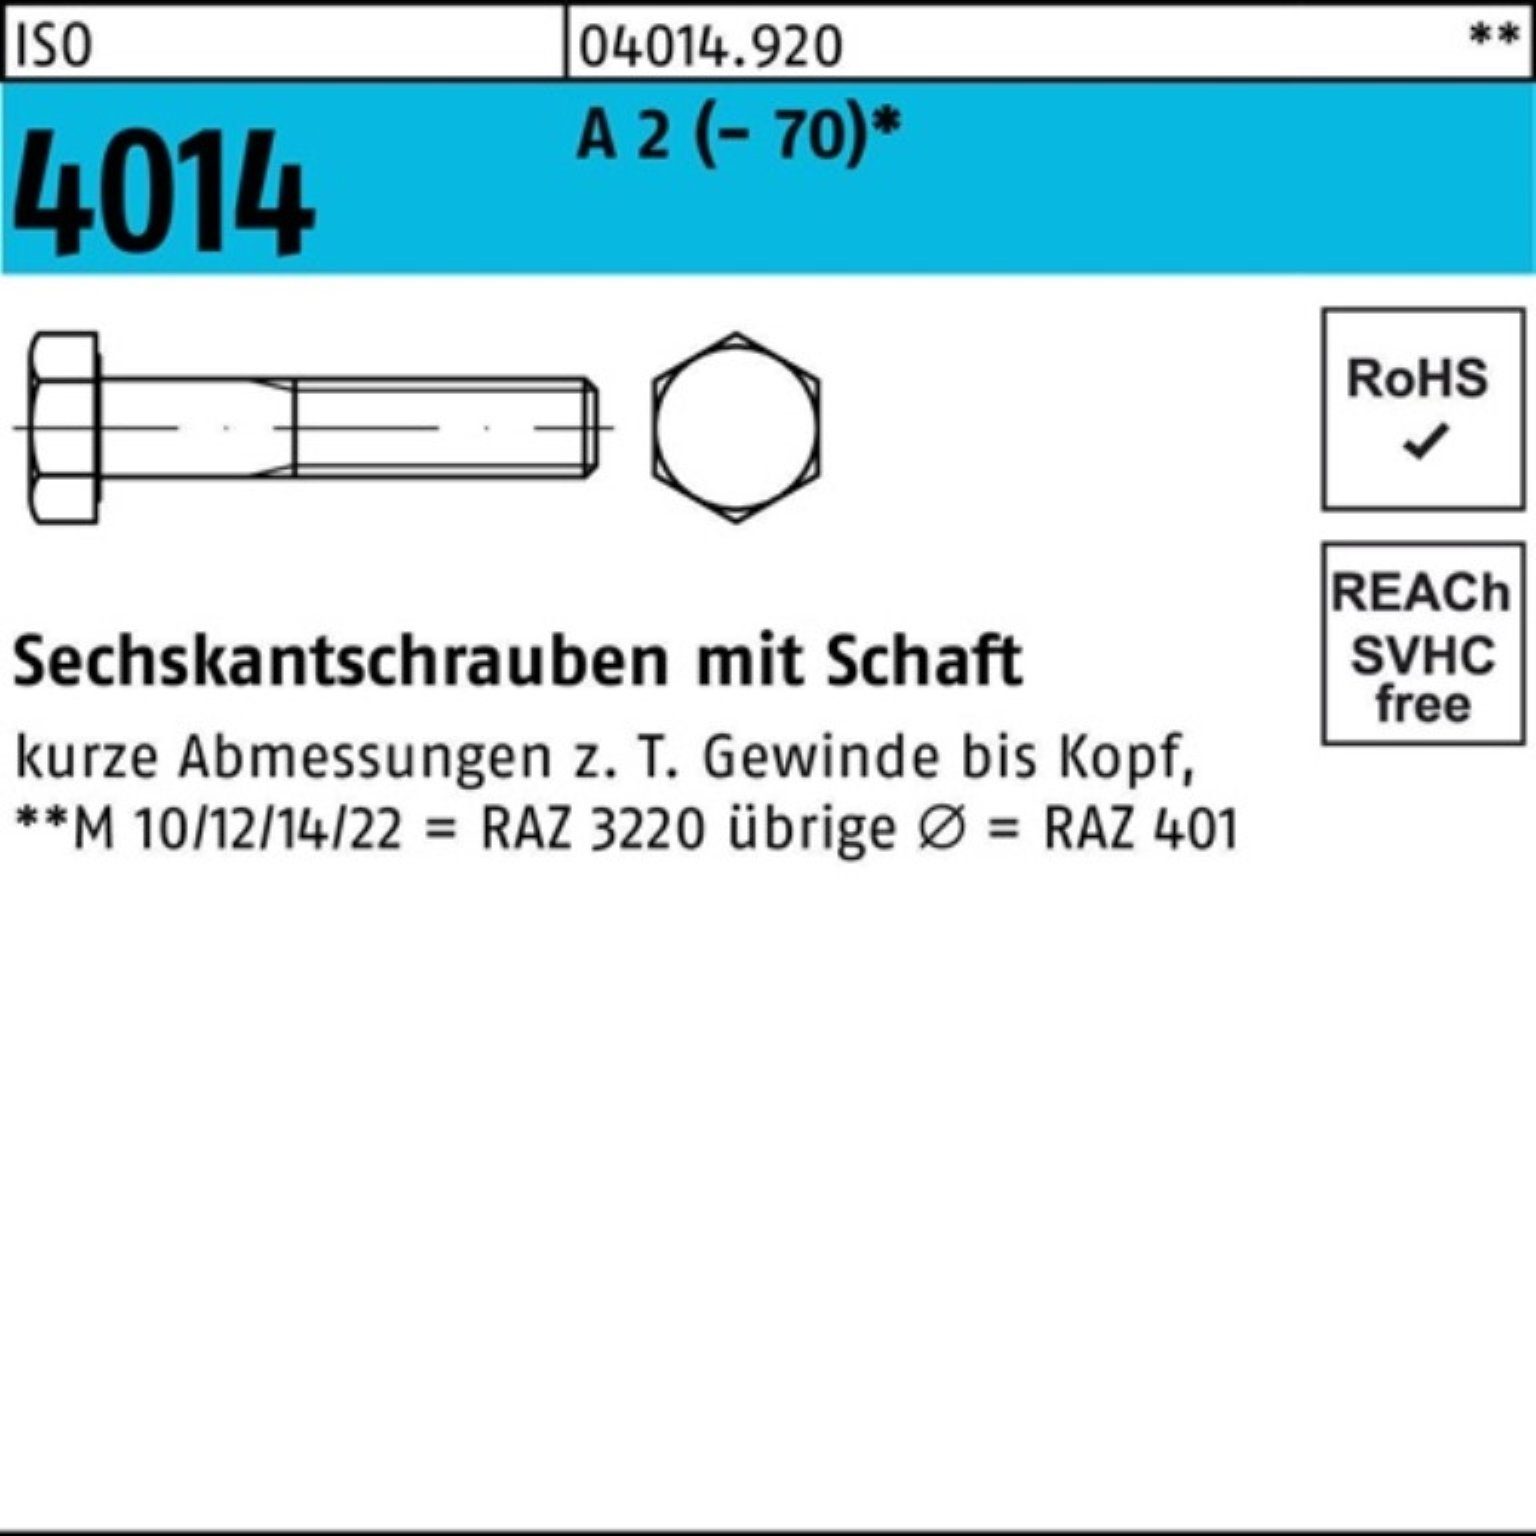 Bufab Sechskantschraube 100er (70) 1 Sechskantschraube ISO Pack St 2 4014 A Schaft M10x 200